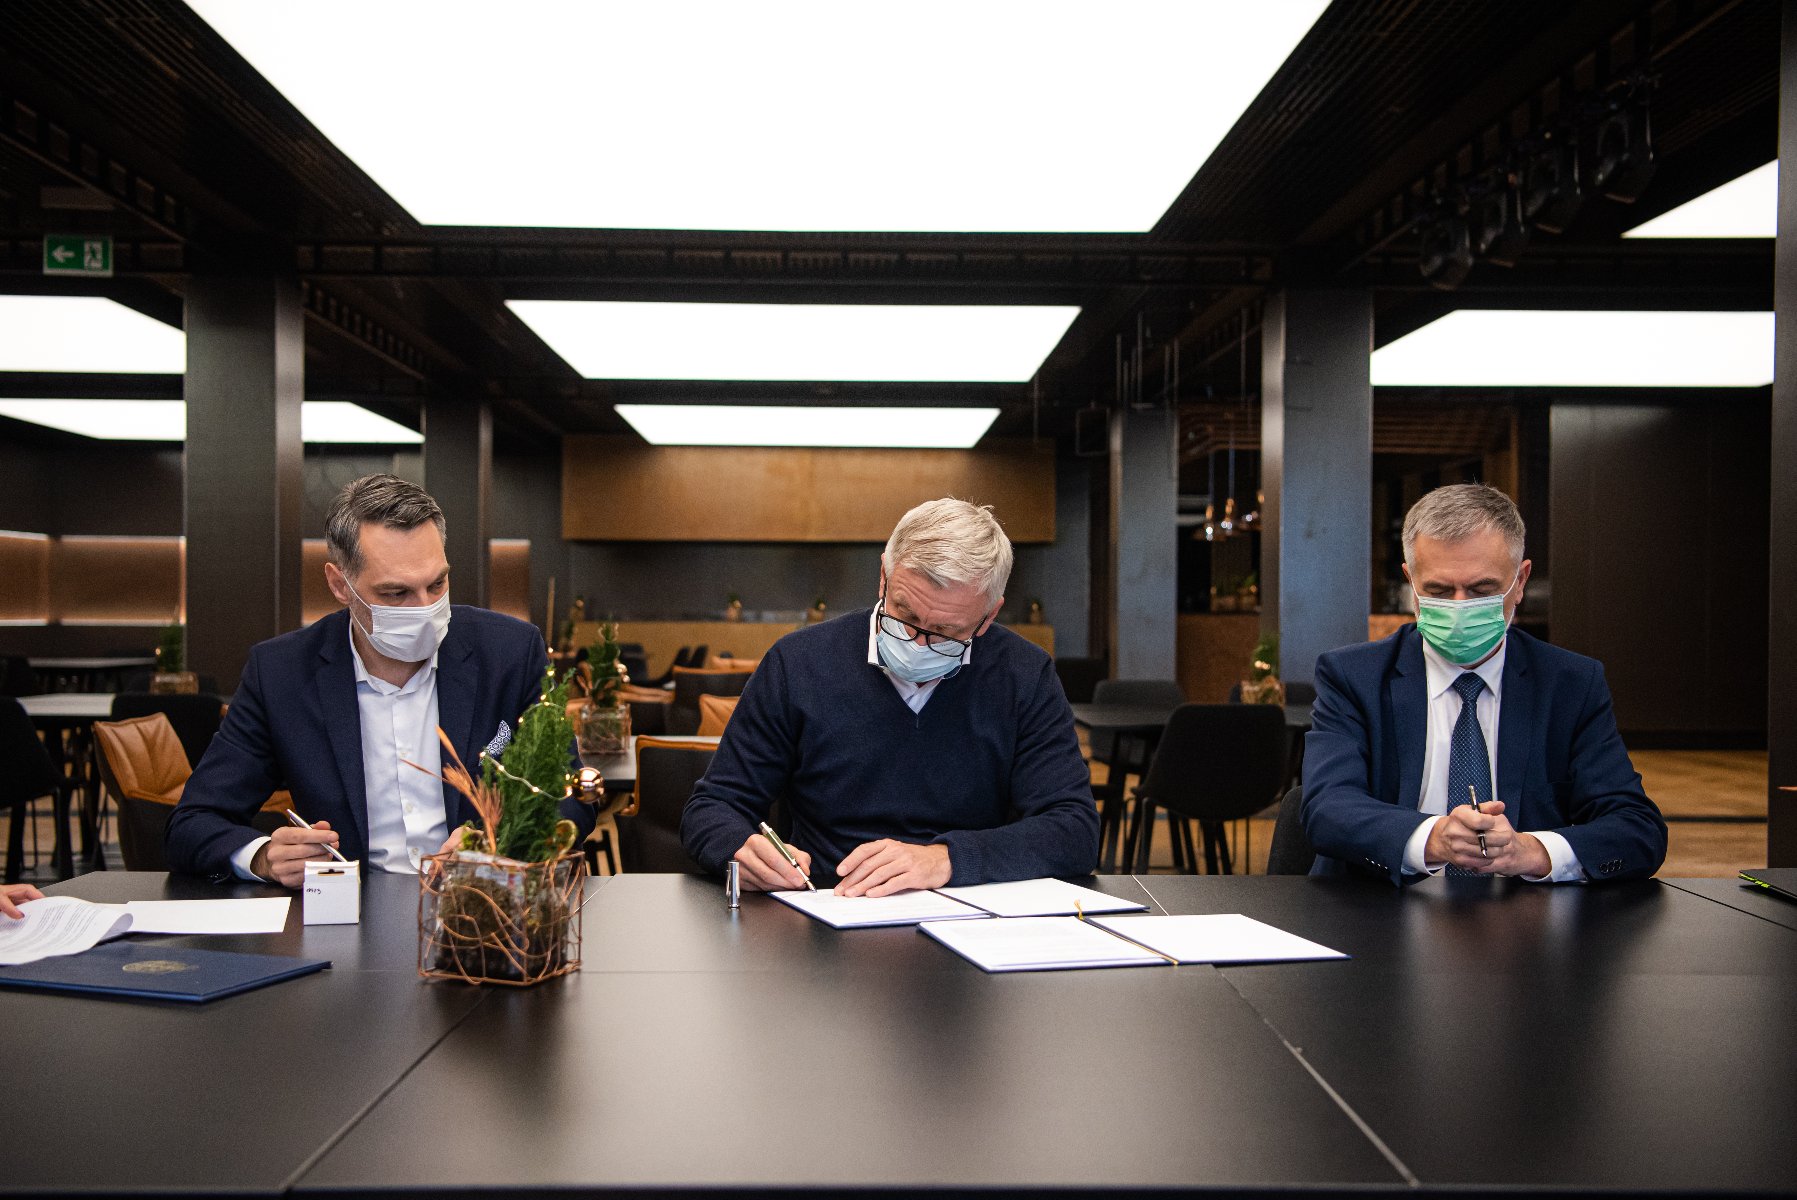 Zdjęcie przedstawia trzech mężczyzn za stołem. W środku znajduje się prezydent Poznania podpisujący umowę. - grafika artykułu